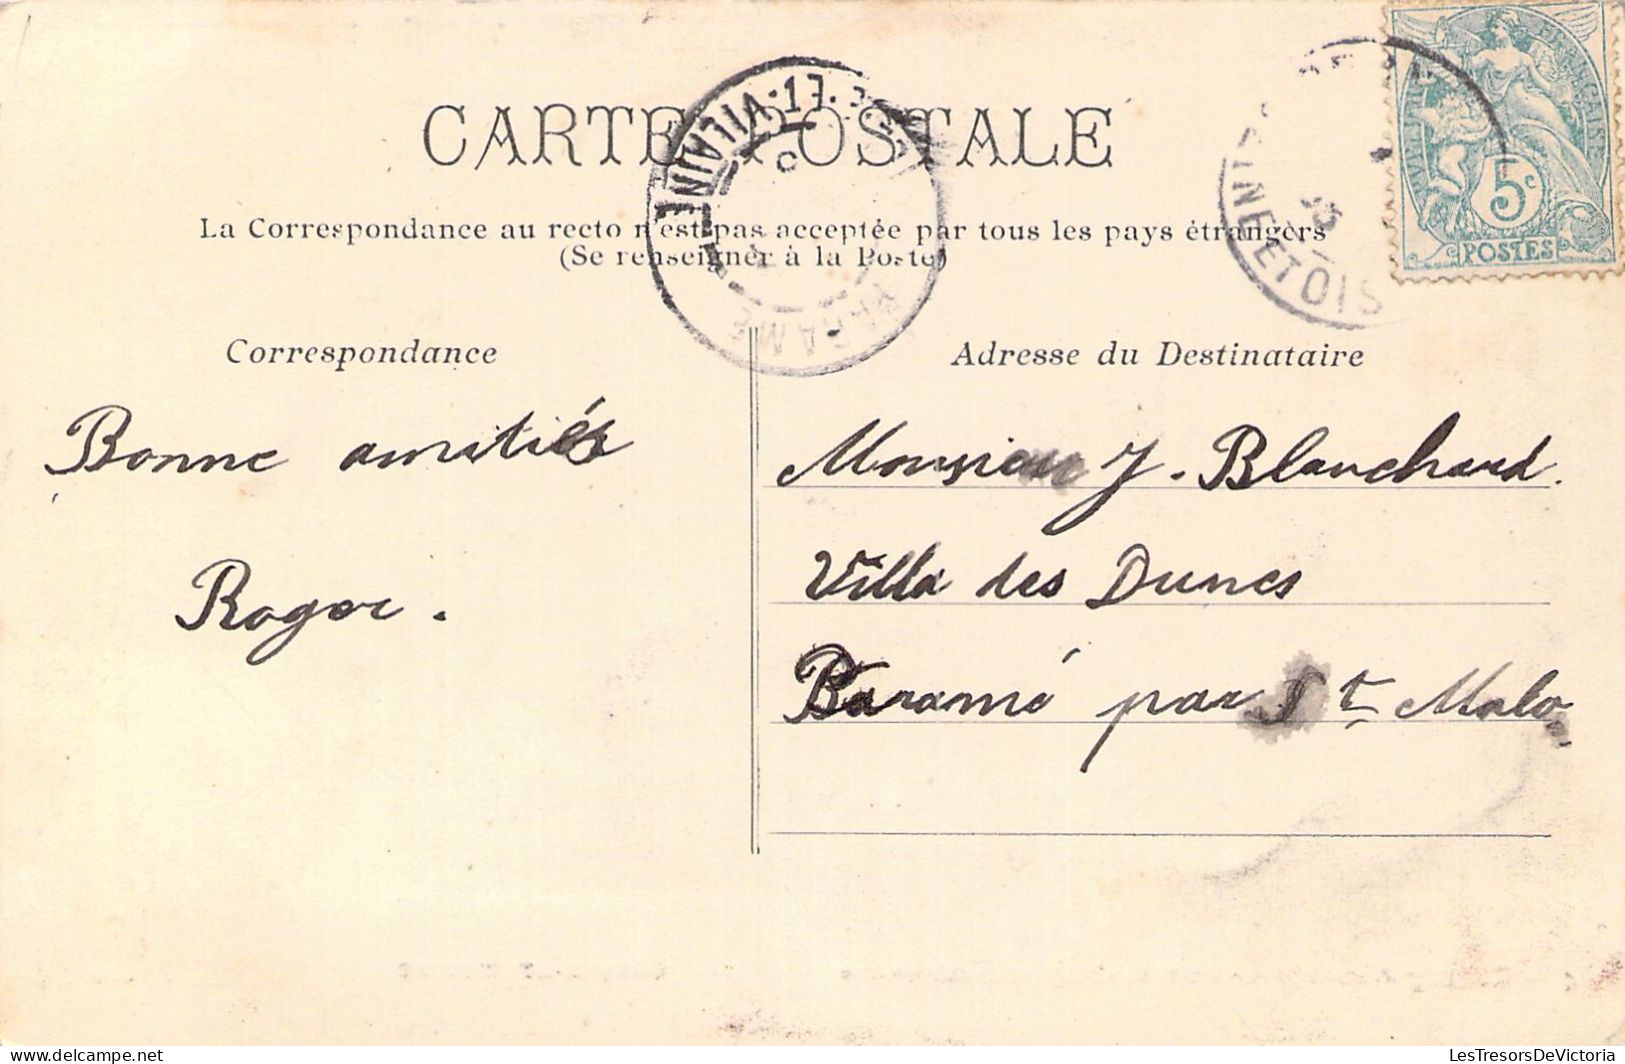 FRANCE - 68 - CERNAY - L'Intérieur De L'Ermitage Des Cascades - Carte Postale Ancienne - Cernay